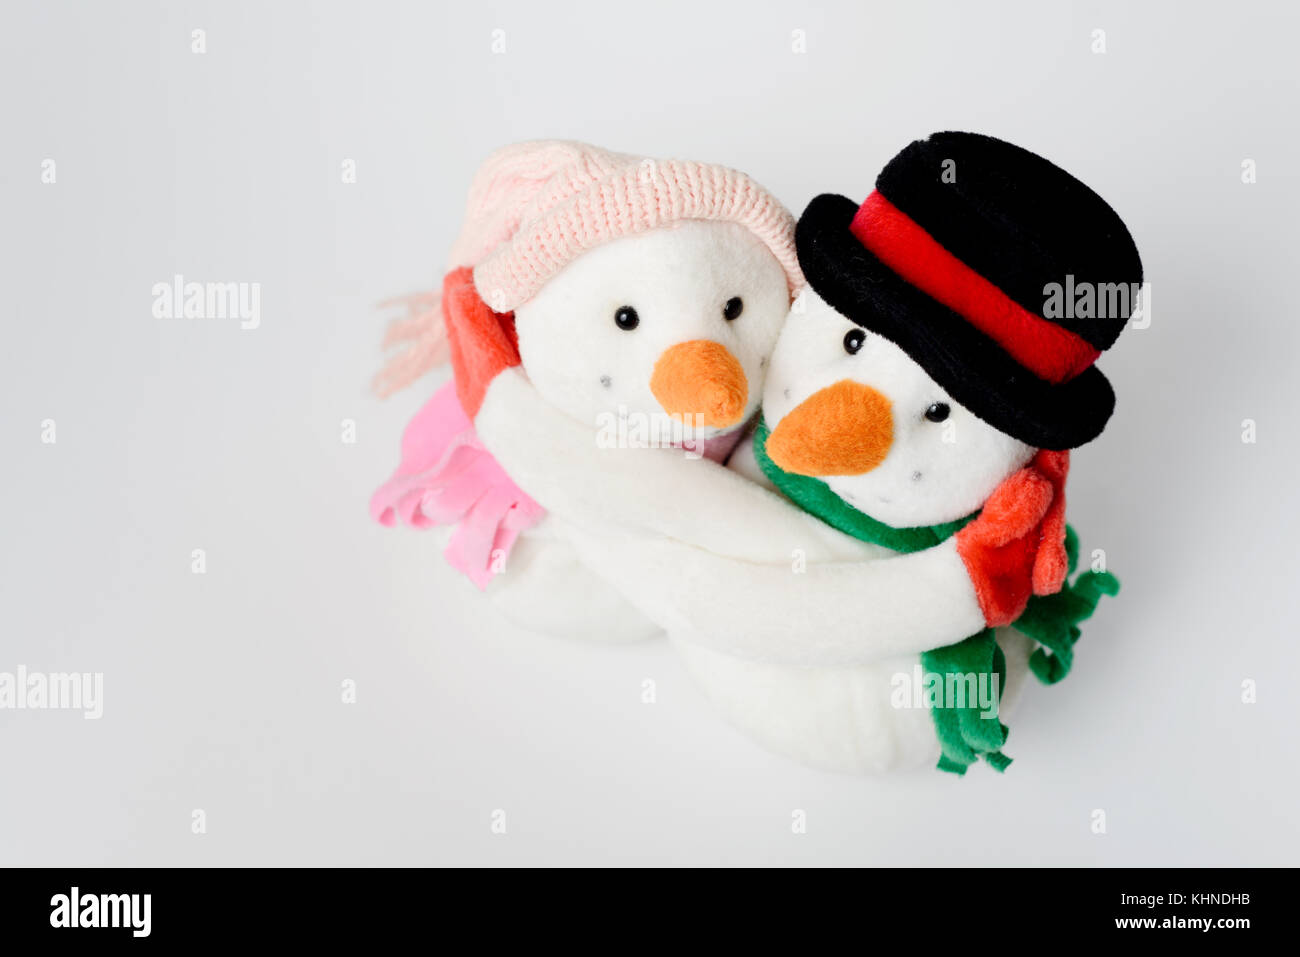 Bonhomme de neige bourré jouets décoration regardant sur fond blanc Banque D'Images